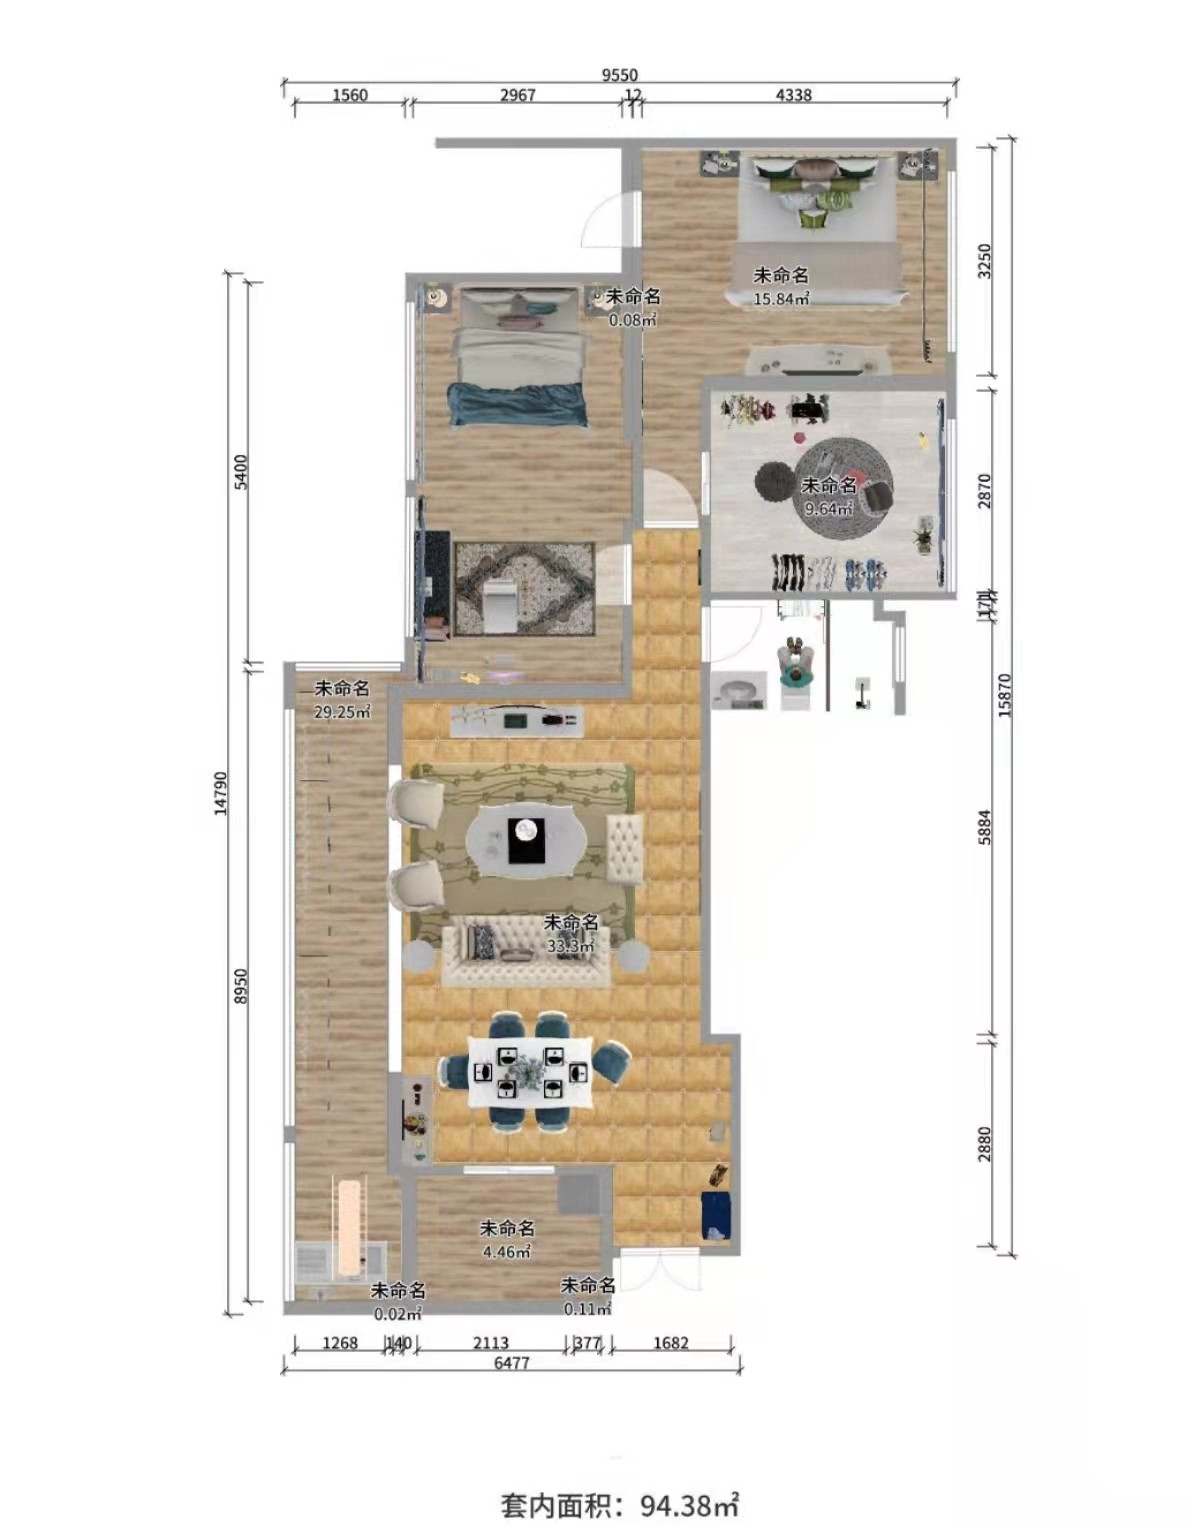 125混搭四房装修效果图,家的温馨装修案例效果图-美广网(图1)